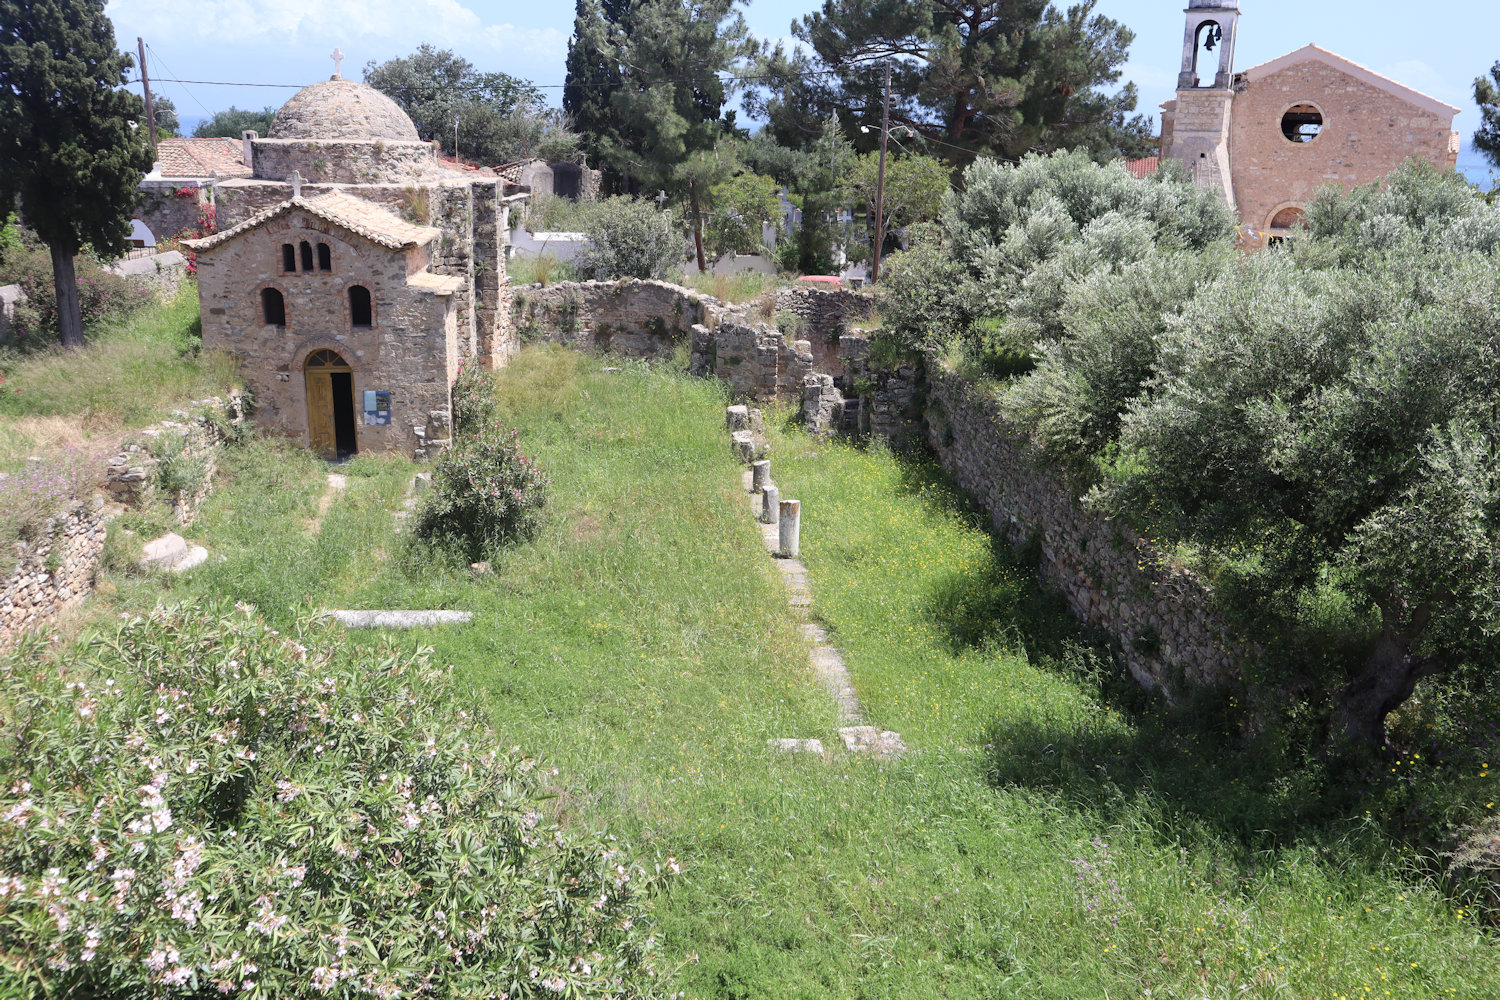 Mauern und Grundmauern der früheren Bischofs-Basilika neben der Festung in Koroni aus dem 8./9. Jahrhundert, damals der Gottesmutter geweiht, mit der darauf später errichteten Kirche, seit dem 19. Jahrhundert ”Hagia Sophia” genannt